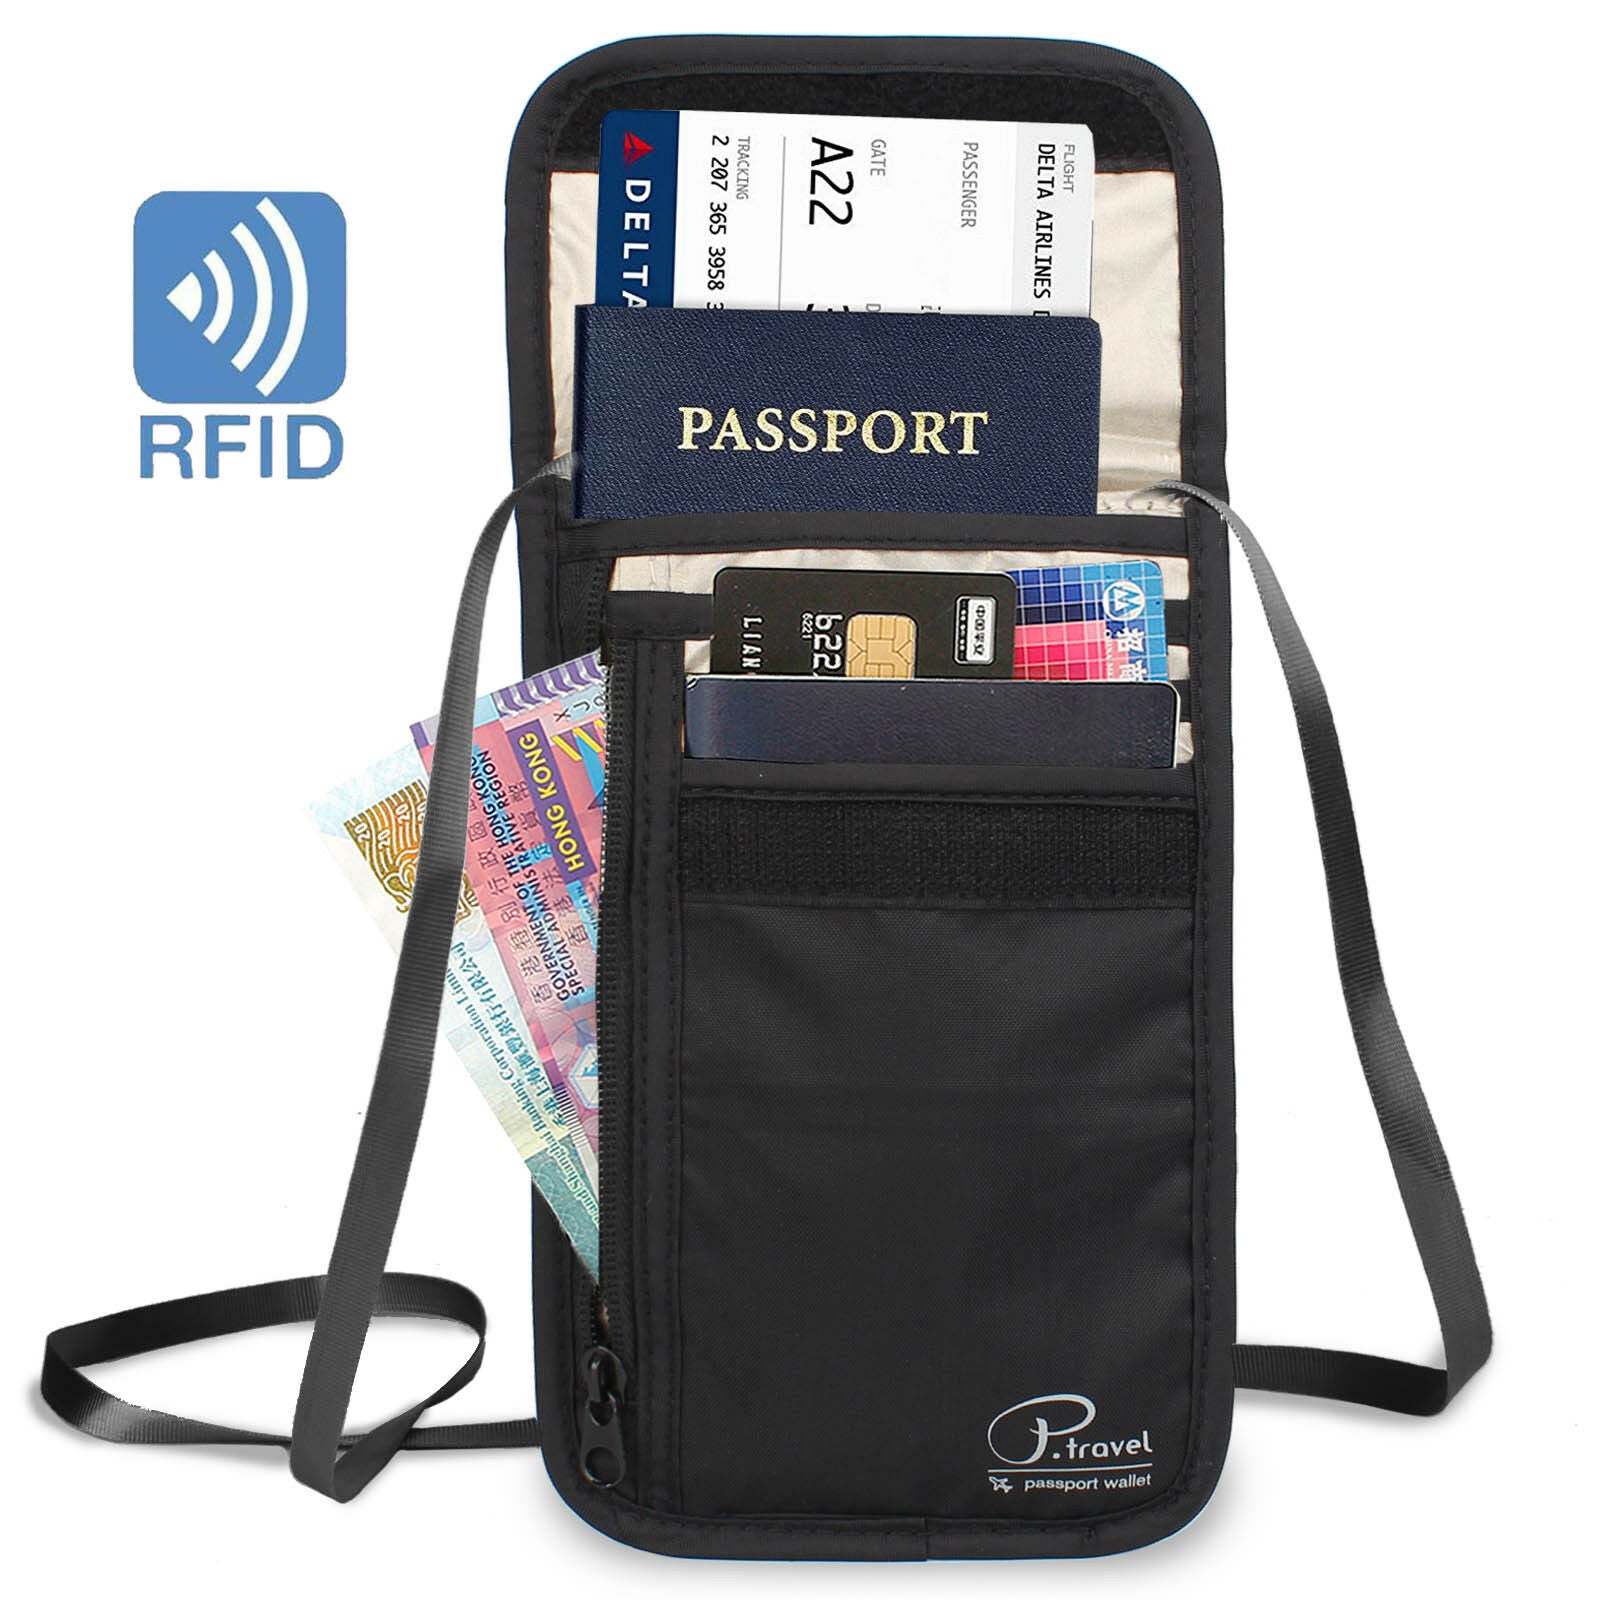 RFID Blocking Neck Stash Pouch Travel Wallet Security Passport Holder ...